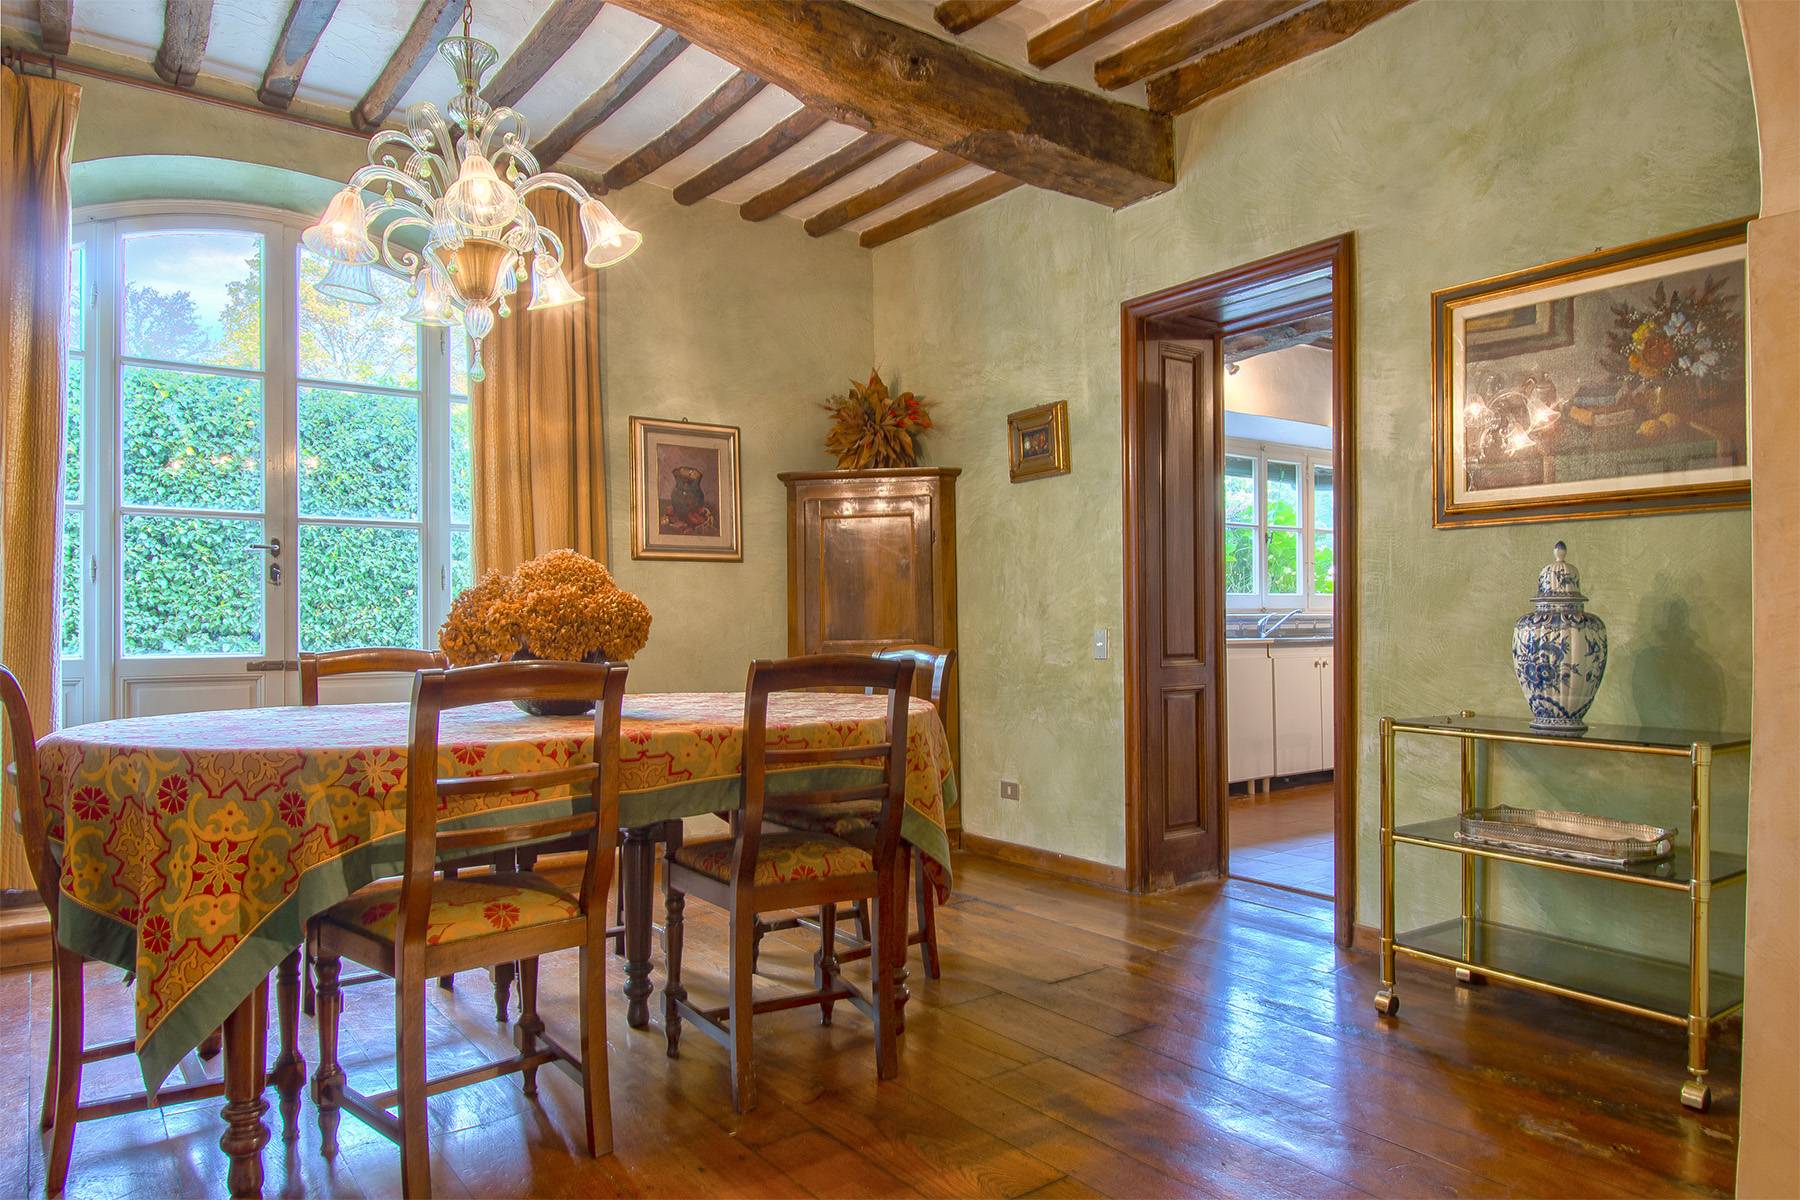 Casa indipendente in Vendita a Lucca: 5 locali, 500 mq - Foto 11